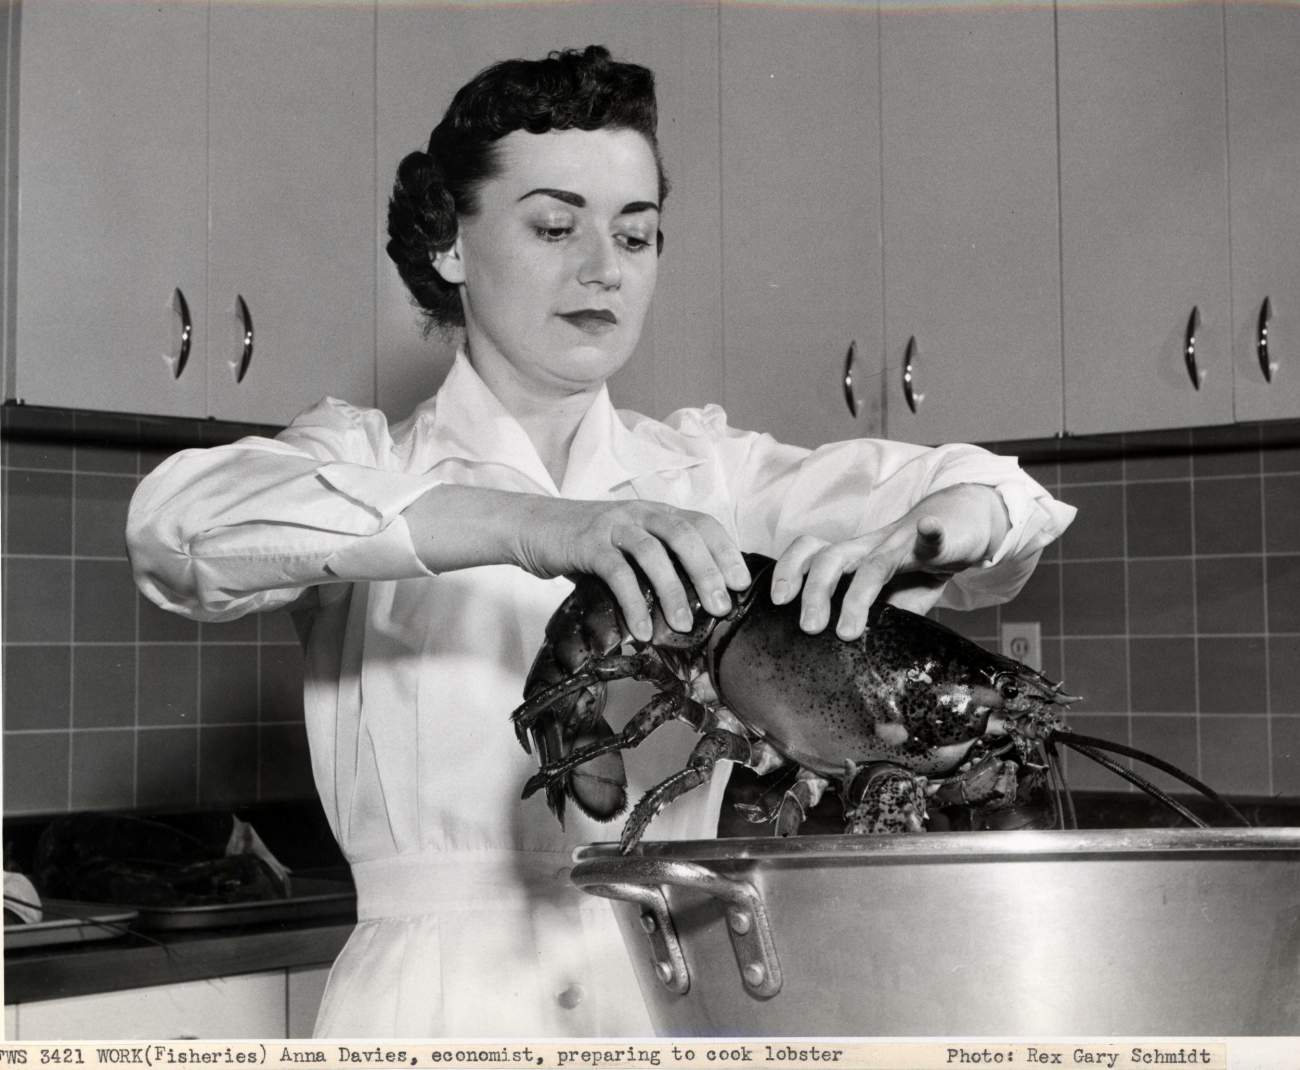 Anna Davies, economist, preparing to cook lobster